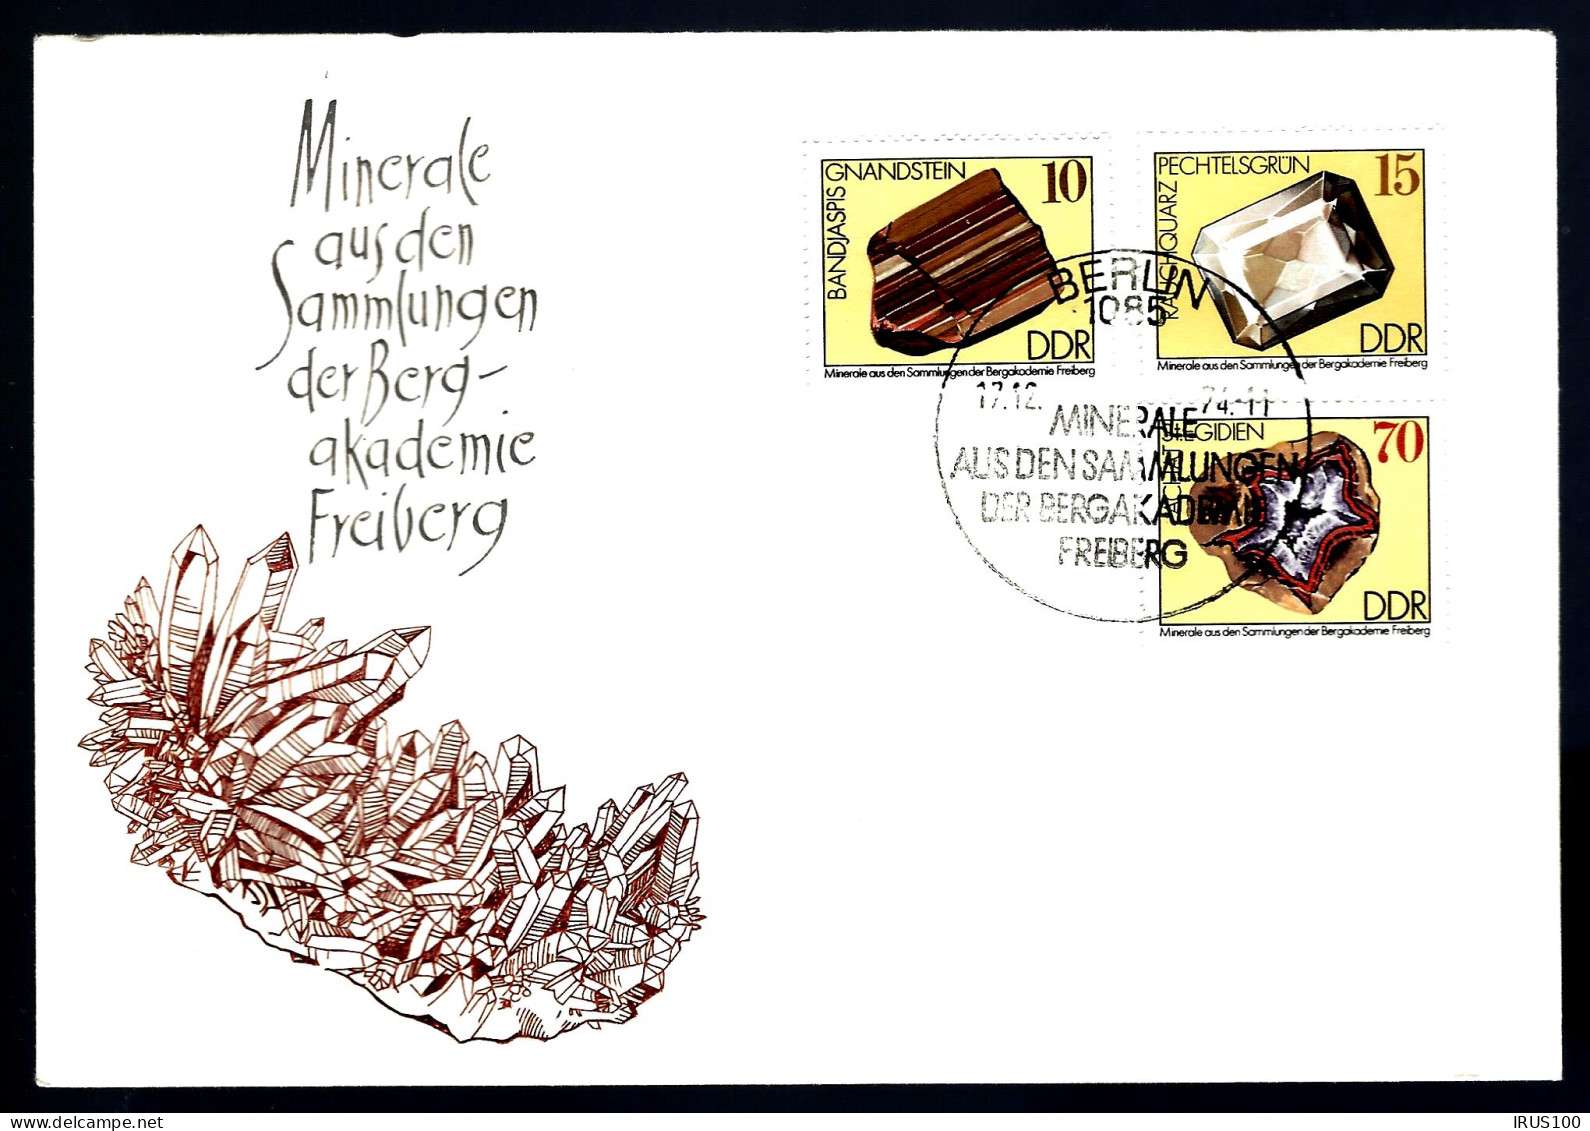 MINÉRAUX - COLLECTION DE LA BERG-AKADEMIE - FRIBOURG - 2 ENVELOPPES - Minéraux